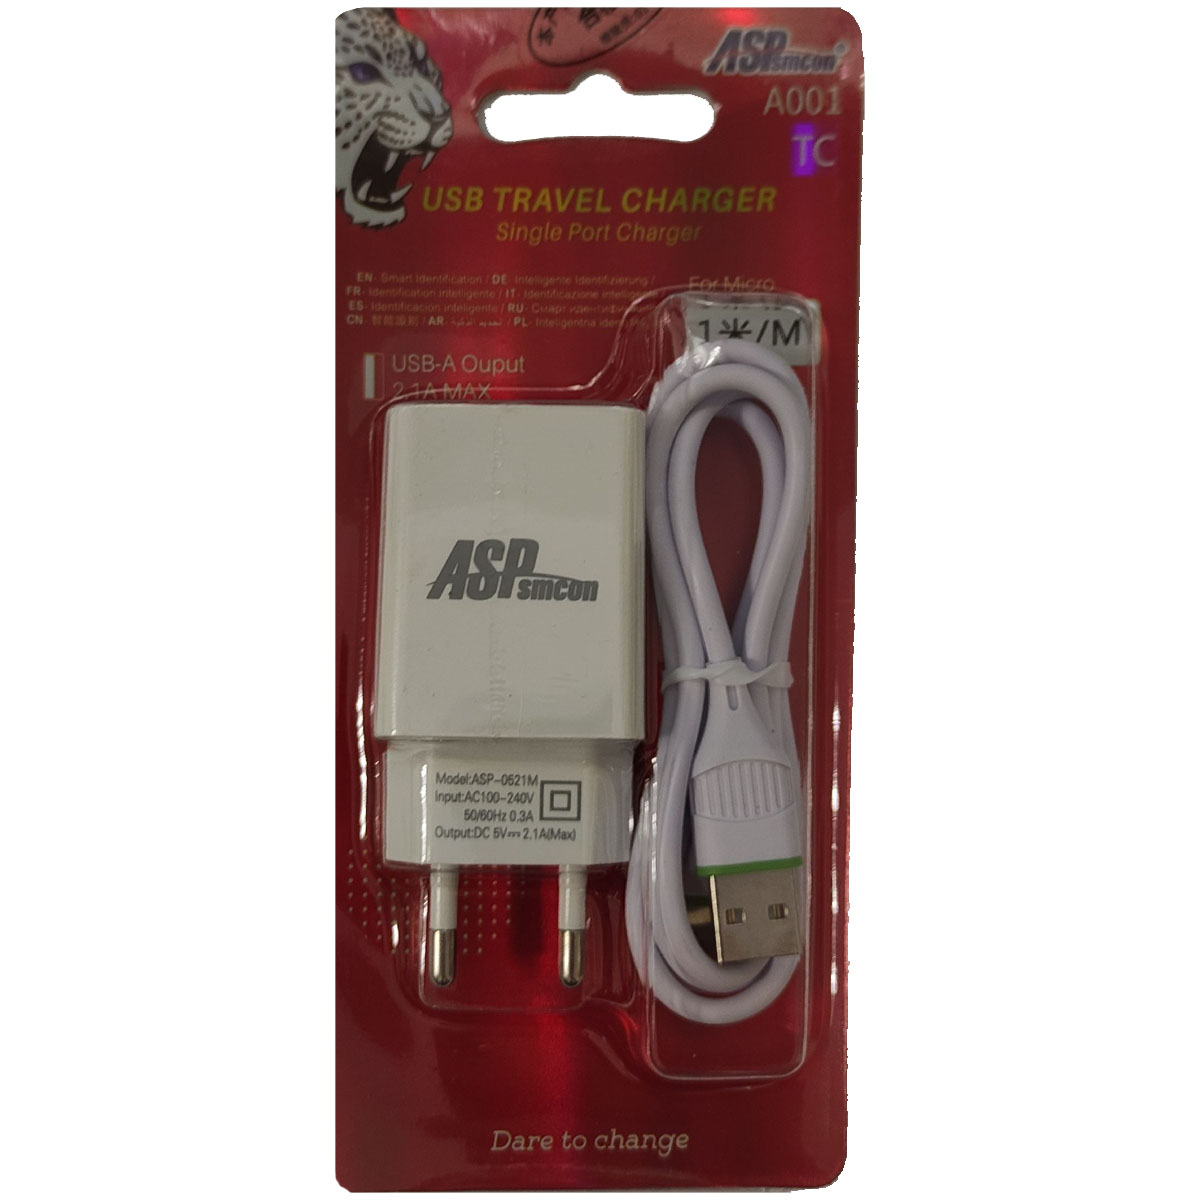 СЗУ (Сетевое зарядное устройство) ASPsmcon A001 с кабелем USB Type C, 2.1A, 1 USB, длина 1 метр, цвет белый